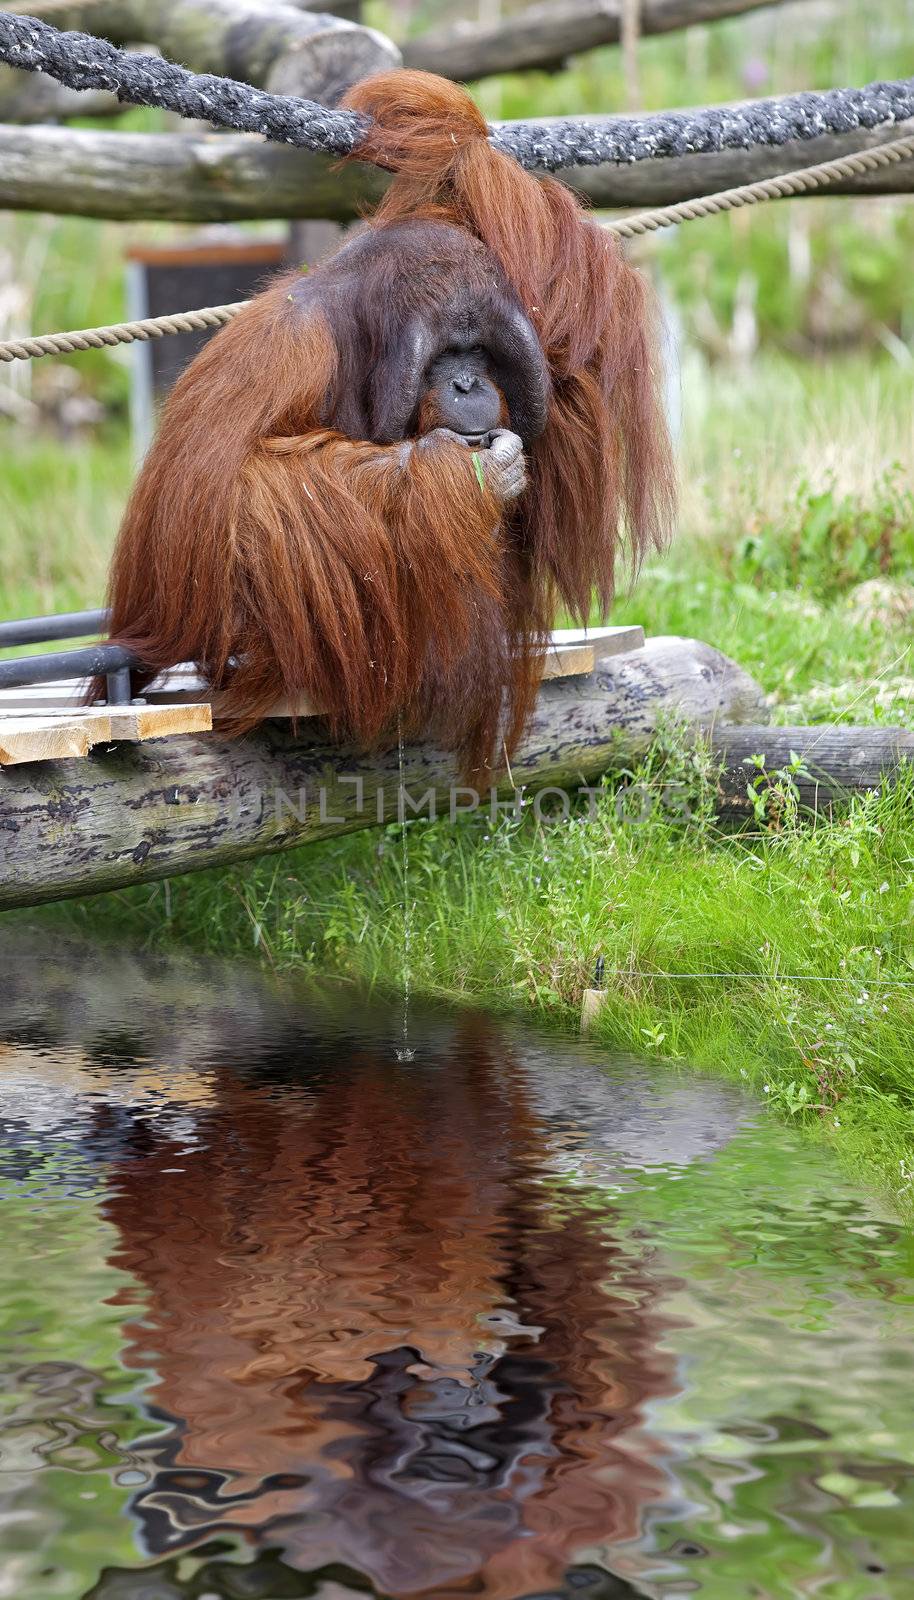 Orangutan sitting on a bridge, peeing in the water